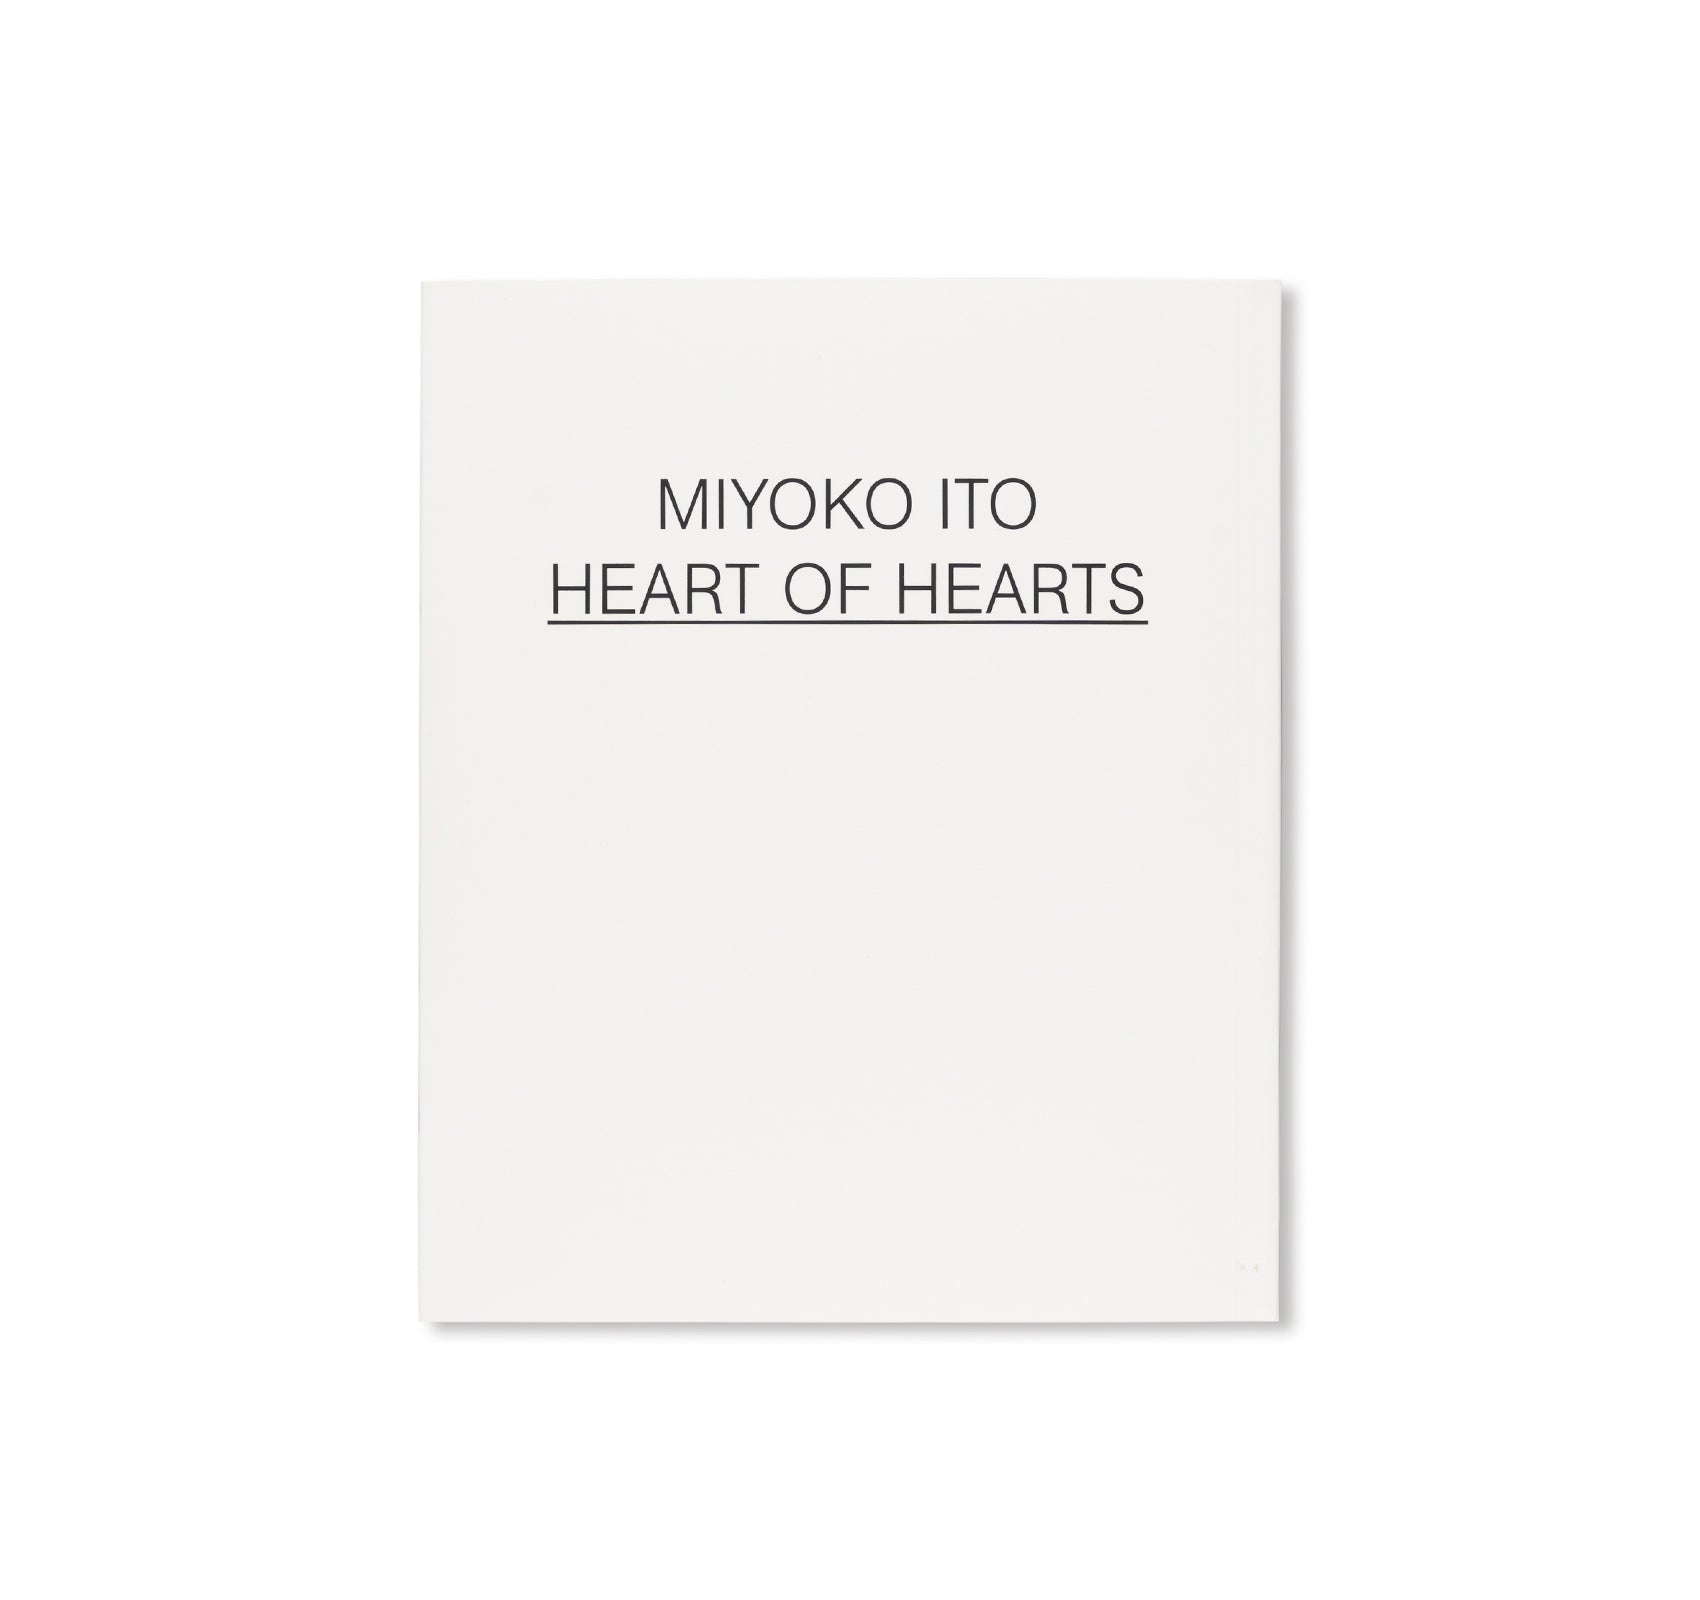 HEART OF HEARTS by Miyoko Ito